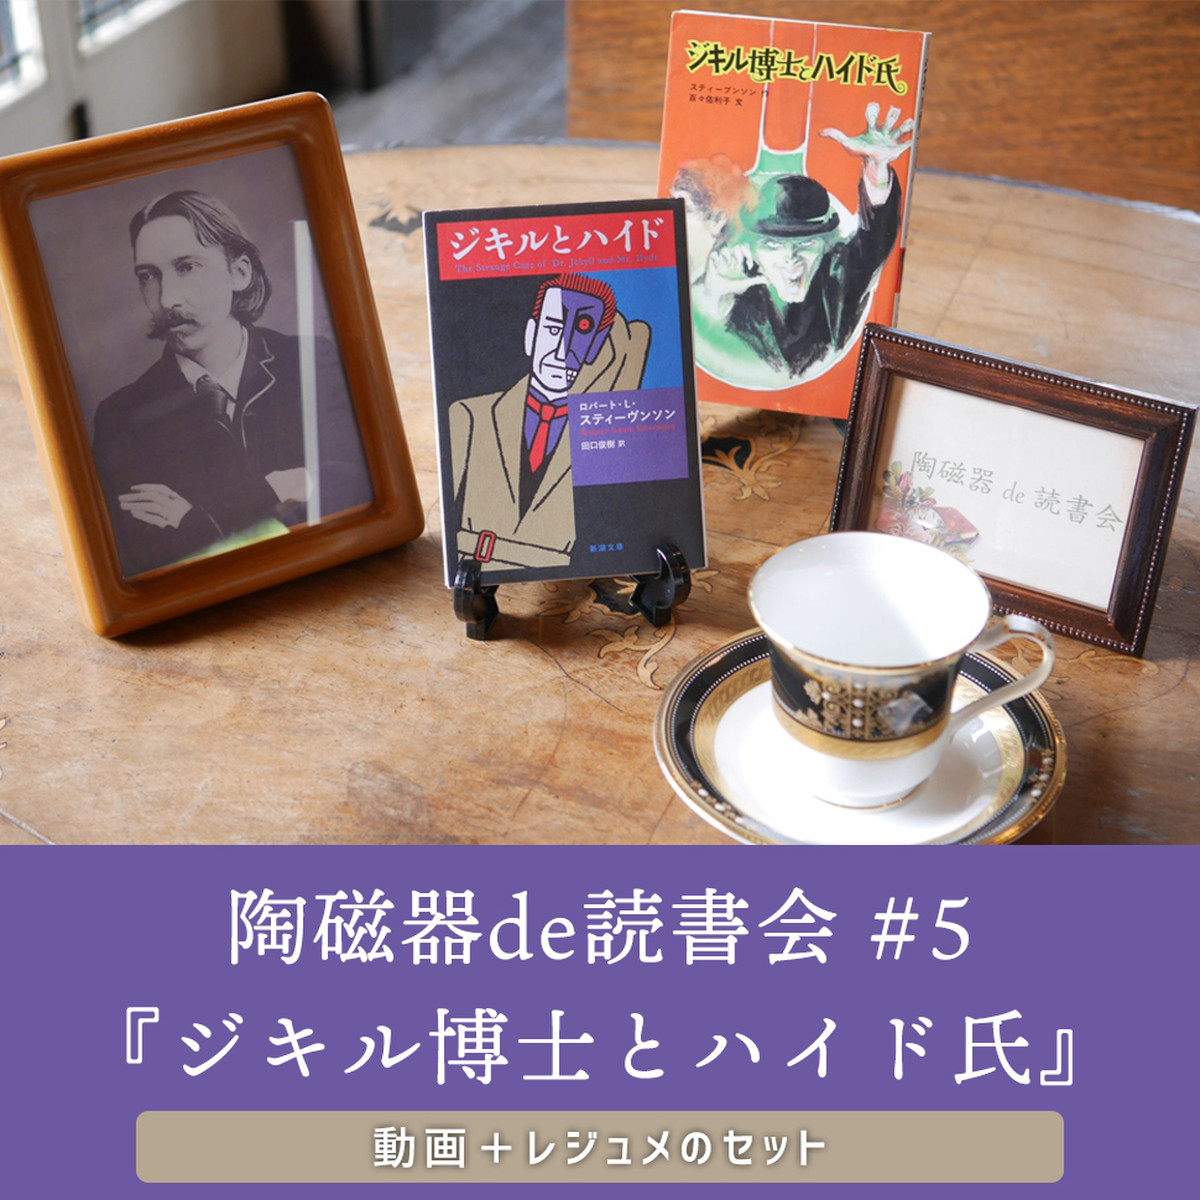 動画 レジュメセット 第5回 ジキル博士とハイド氏 陶磁器de読書会 Carino Shop